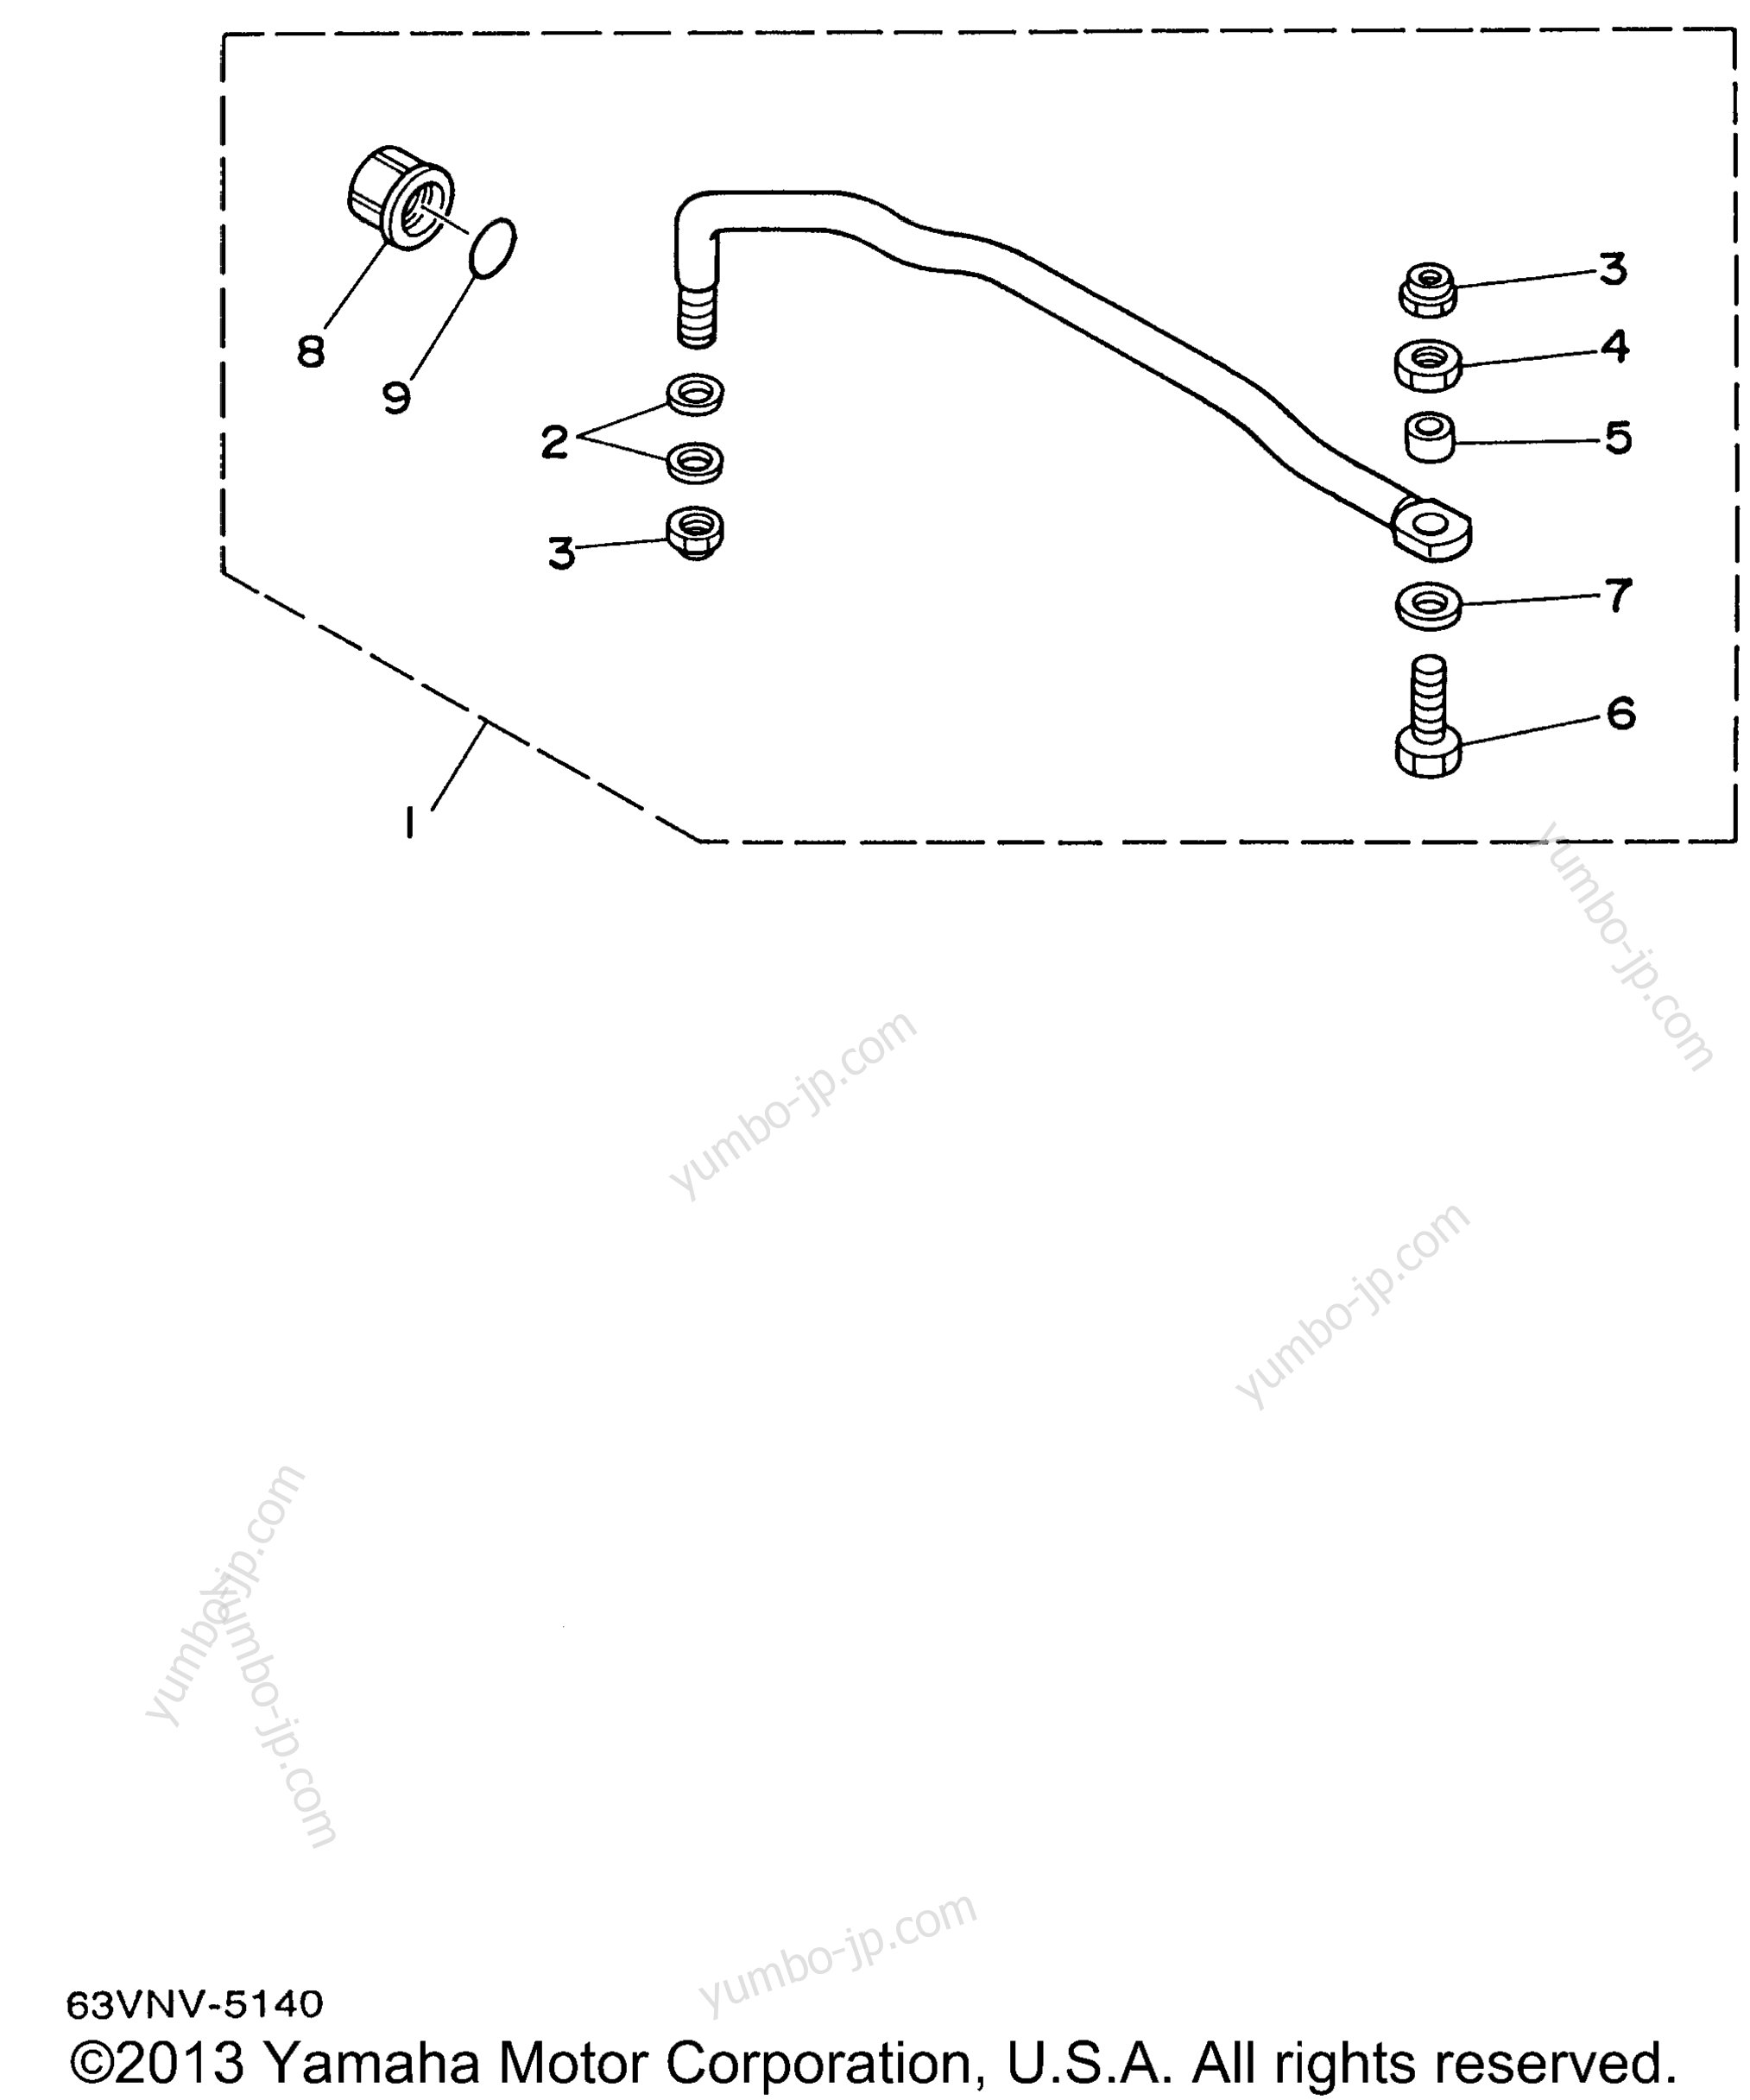 Steering Guide для лодочных моторов YAMAHA 9.9MSHU 1996 г.